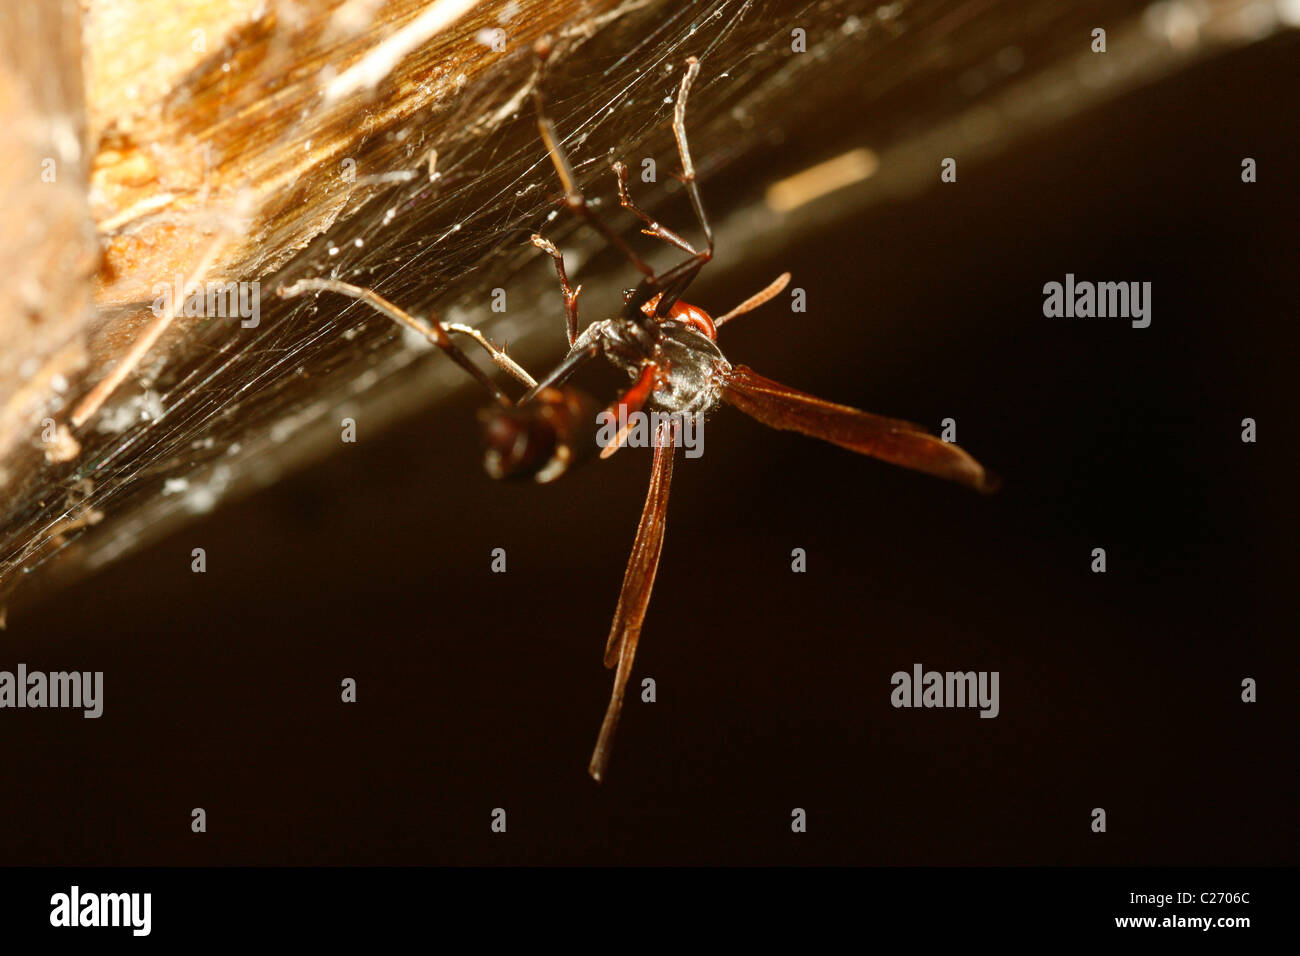 Une guêpe est coincé dans une toile d'araignée Banque D'Images